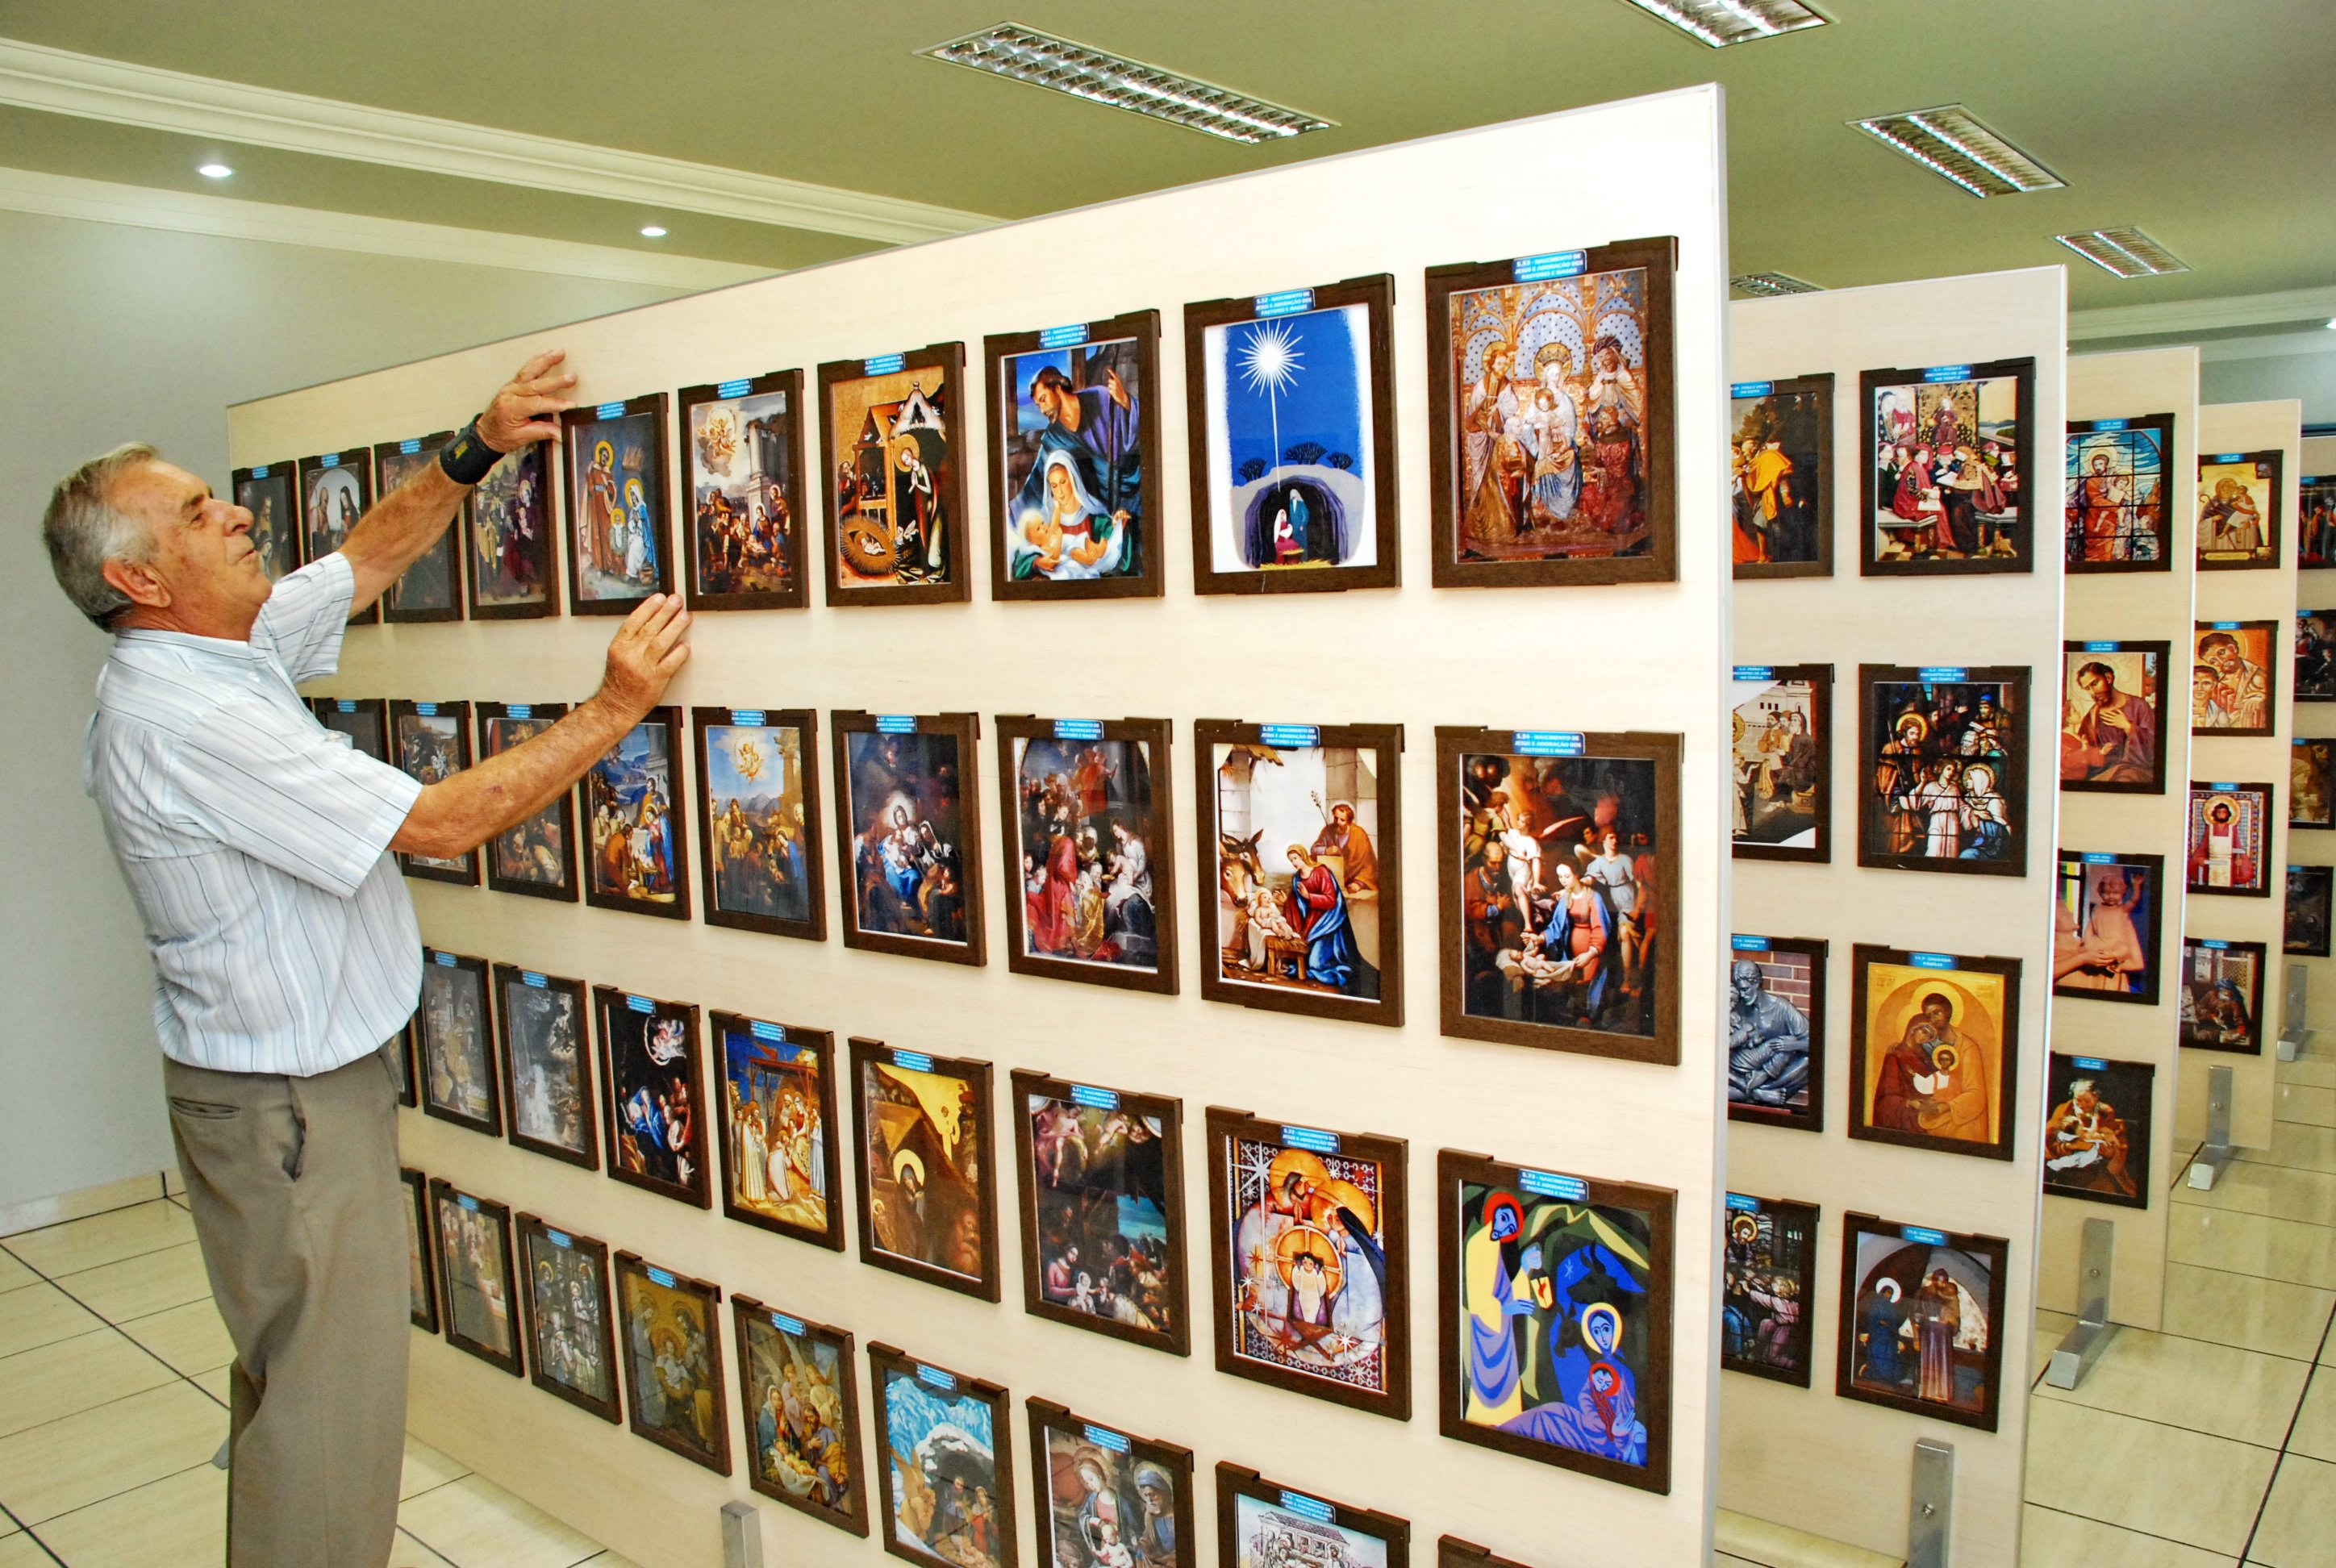 Obras estão expostas na Paróquia São José, em Apucarana| Foto: Sergio Rodrigo/Tribuna do Norte